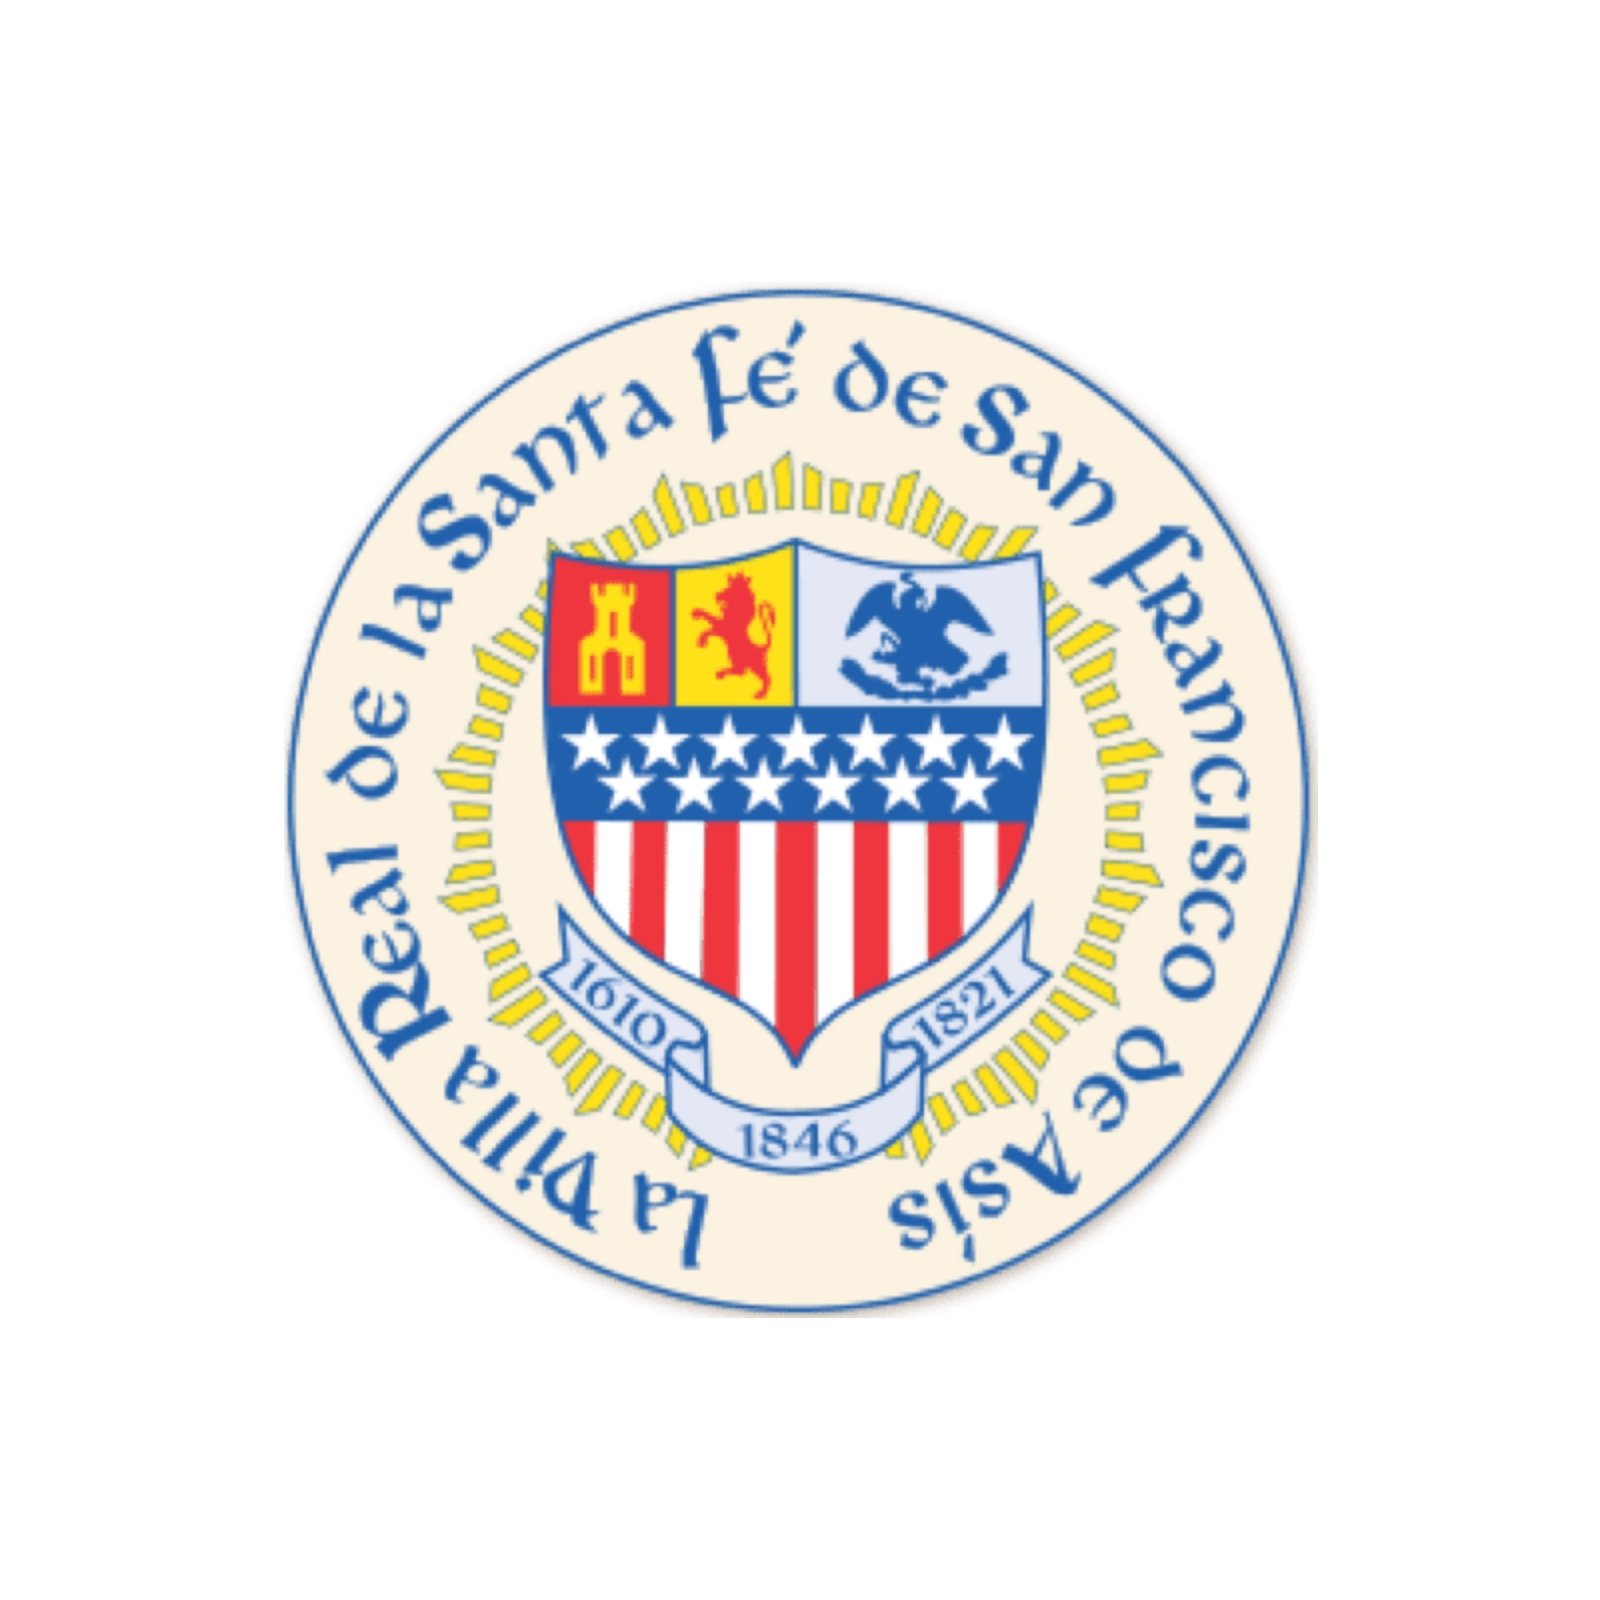 City of Santa Fe logo.jpg